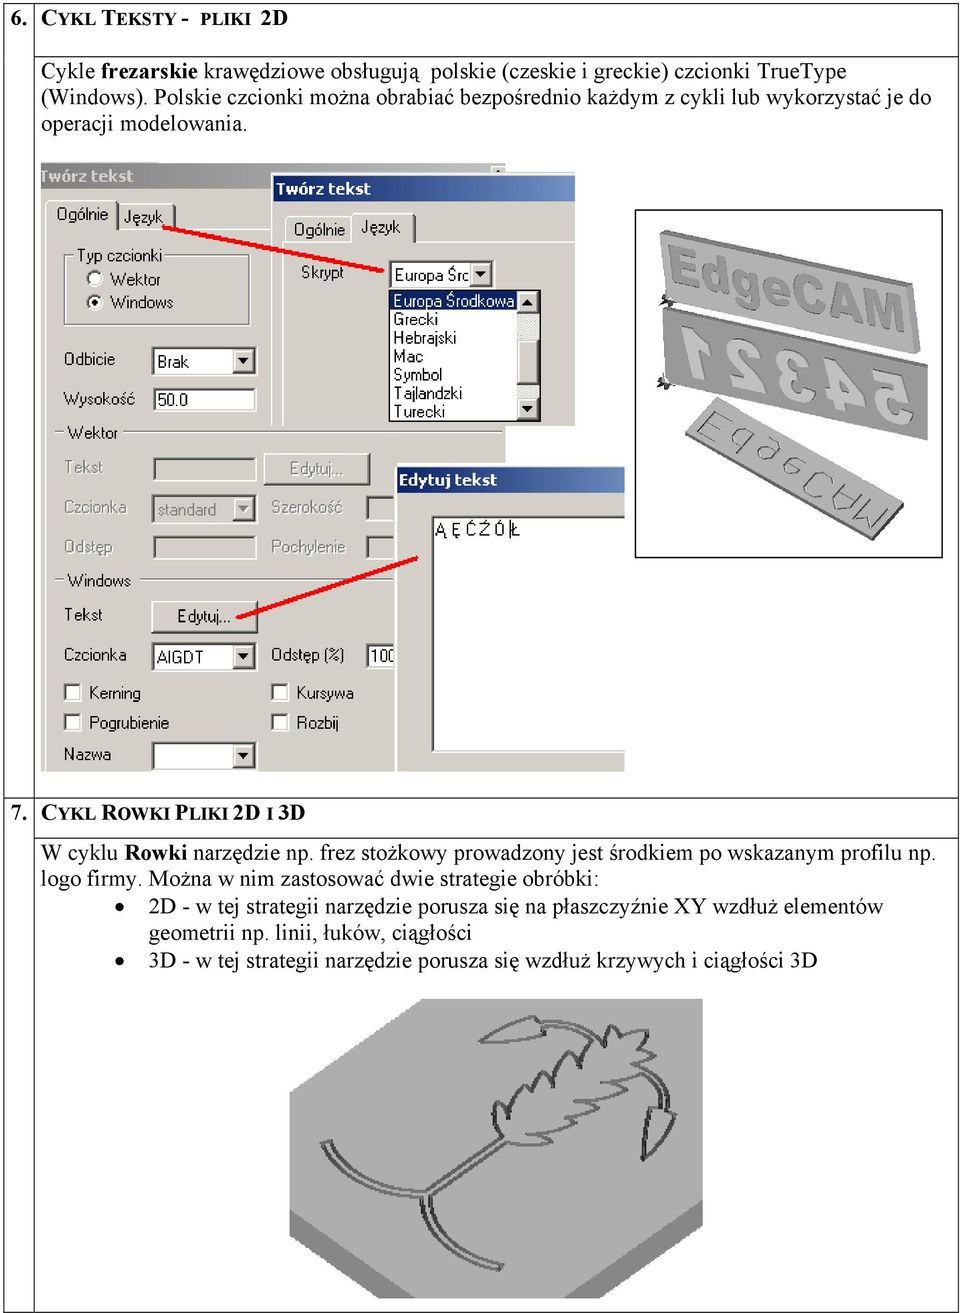 CYKL ROWKI PLIKI 2D I 3D W cyklu Rowki narzędzie np. frez stożkowy prowadzony jest środkiem po wskazanym profilu np. logo firmy.